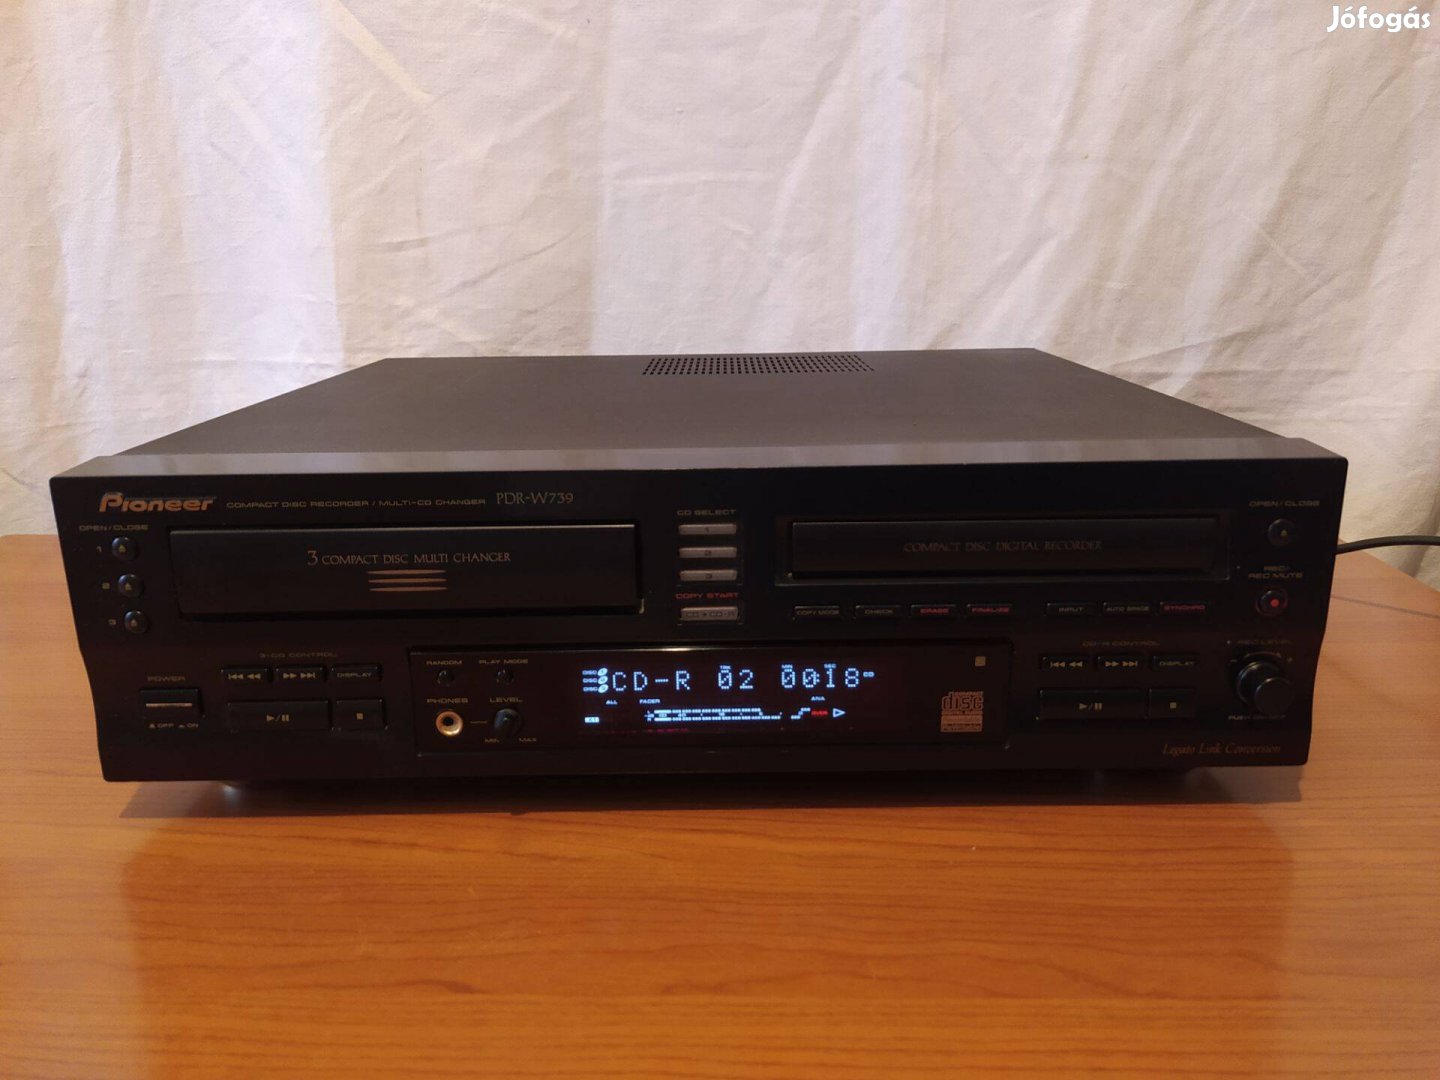 Pioneer PDR-W739 cd felvevő és lejátszó hibás állapotban